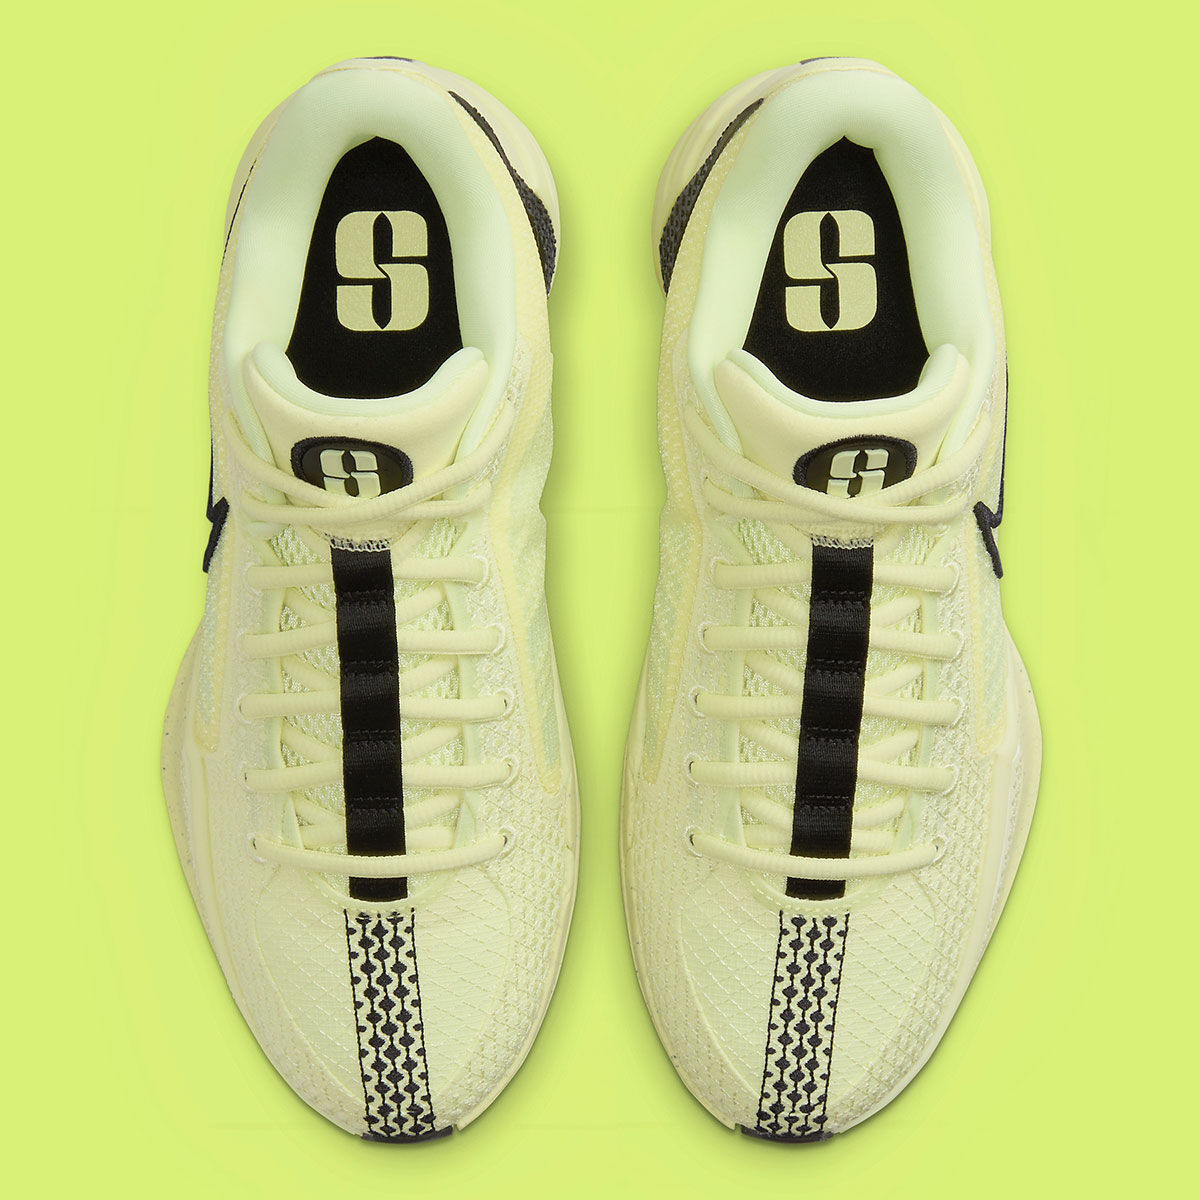 innovación que tiene Nike tanto en materiales como en diseño Luminous Green Black Fq3381 303 7